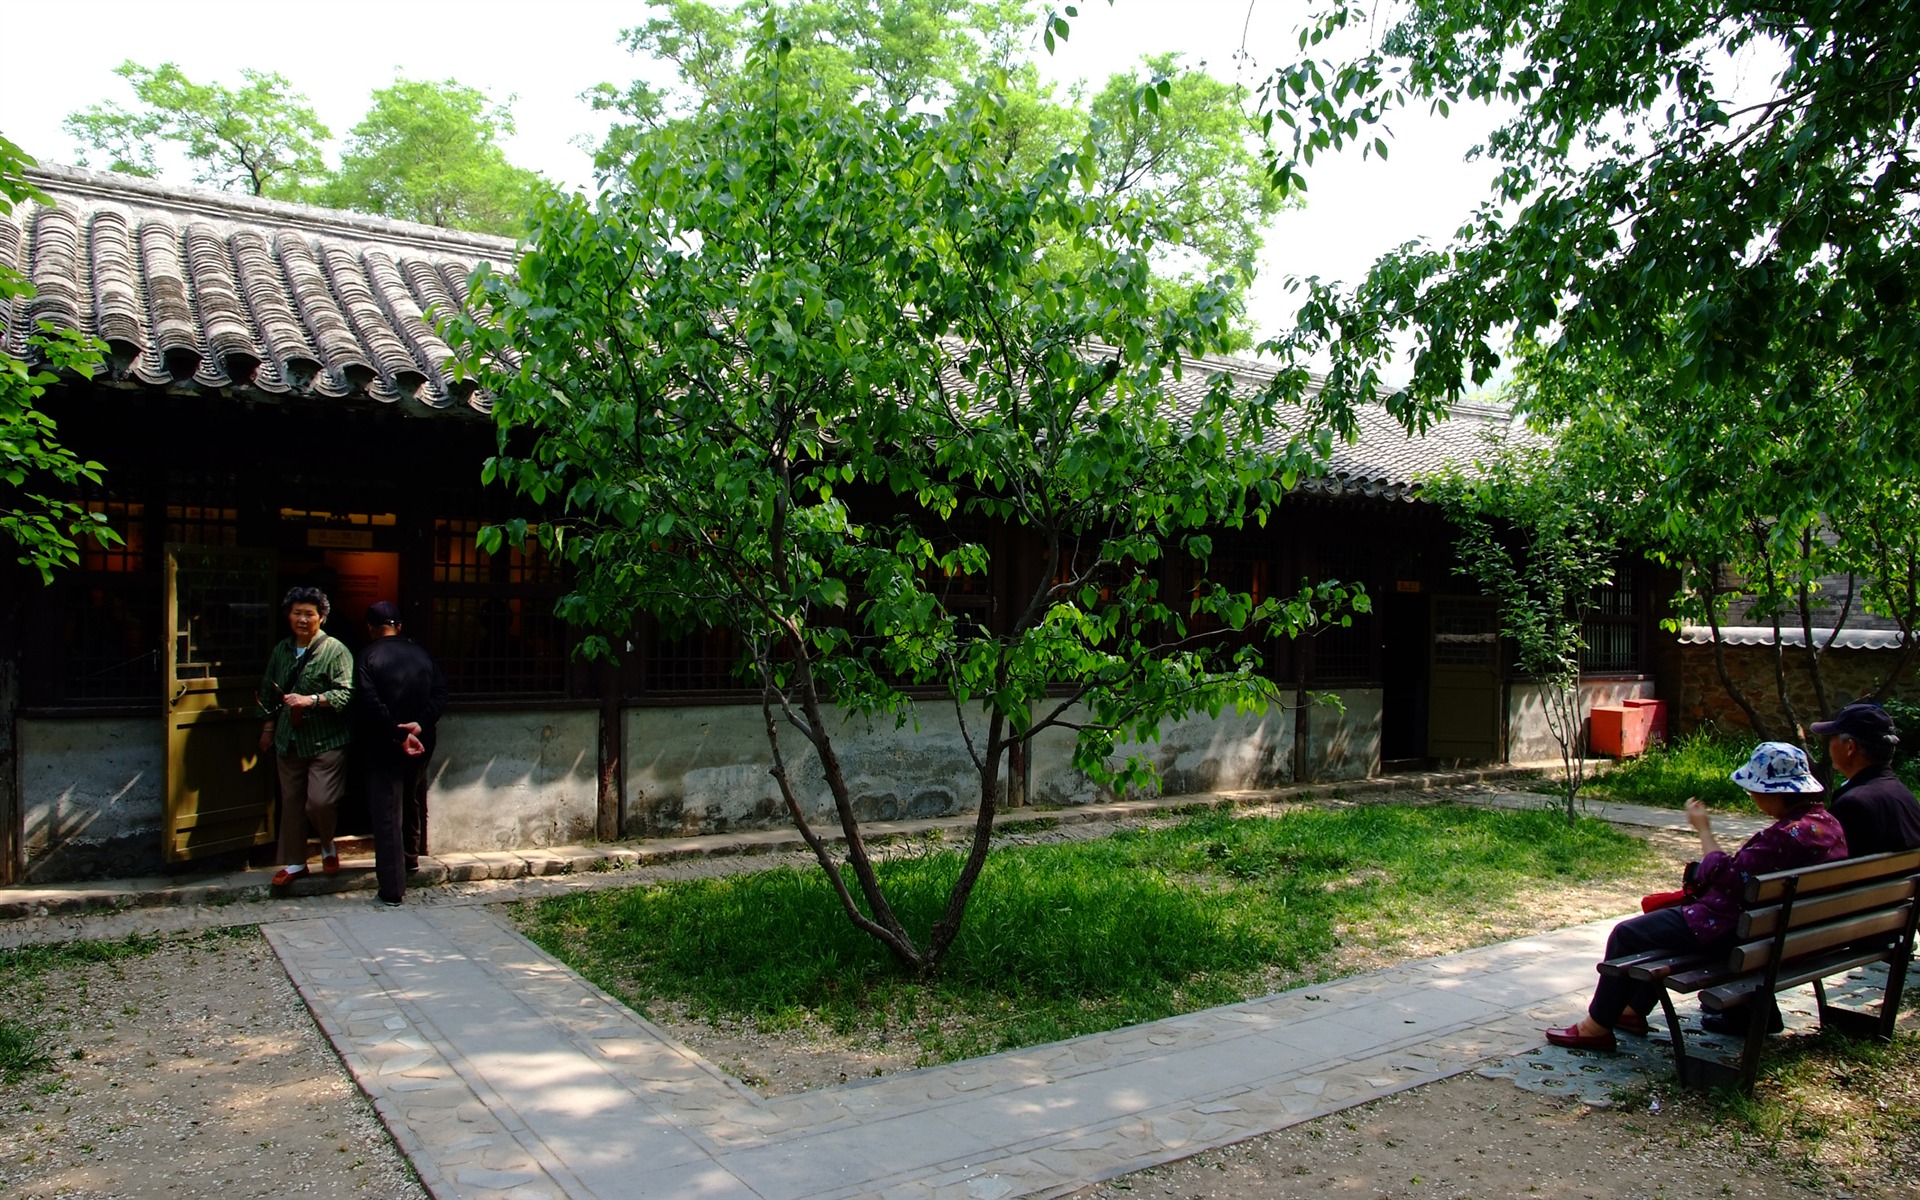 Xiangshan jardín principios del verano (obras barras de refuerzo) #18 - 1920x1200